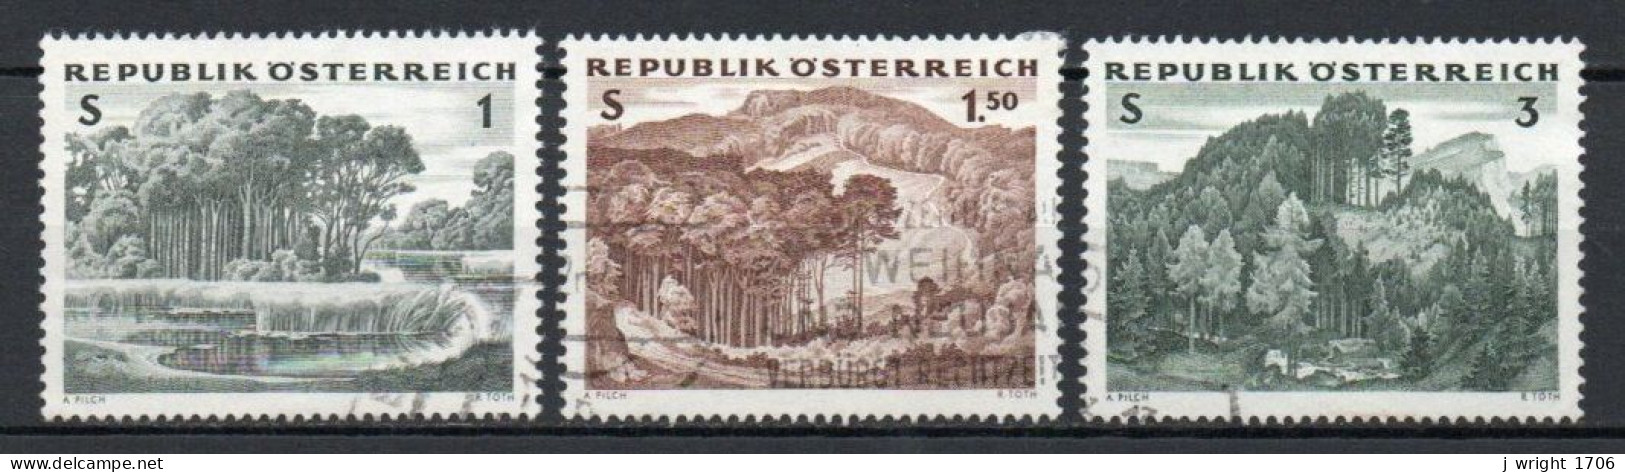 Austria, 1962, Austrian Forests, Set, USED - Gebraucht